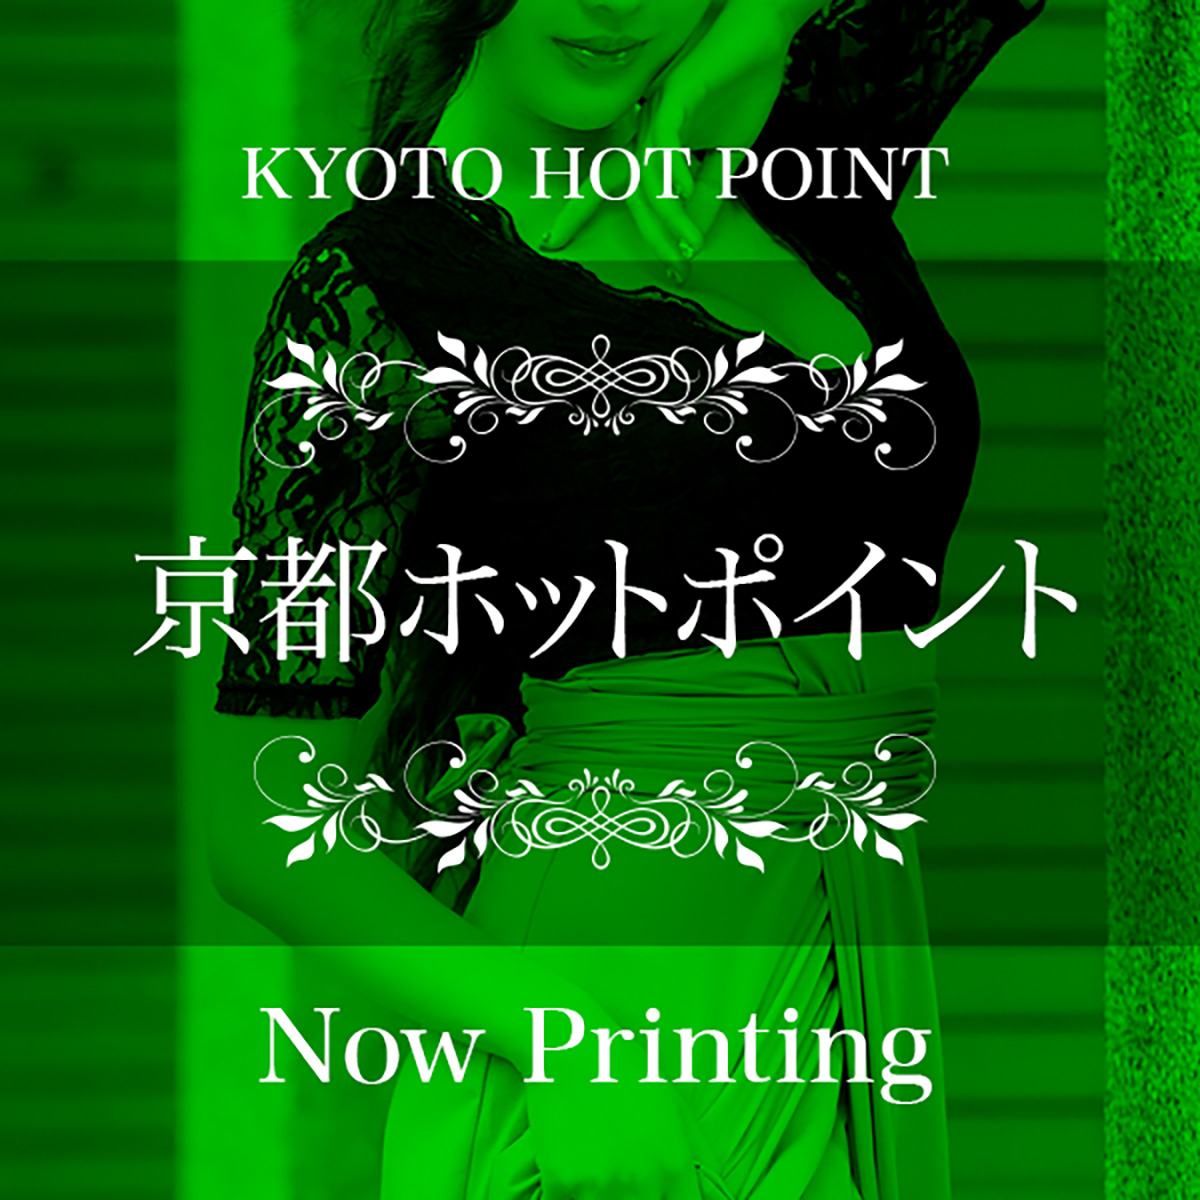 京都のファッションヘルス『京都ホットポイントグループ』